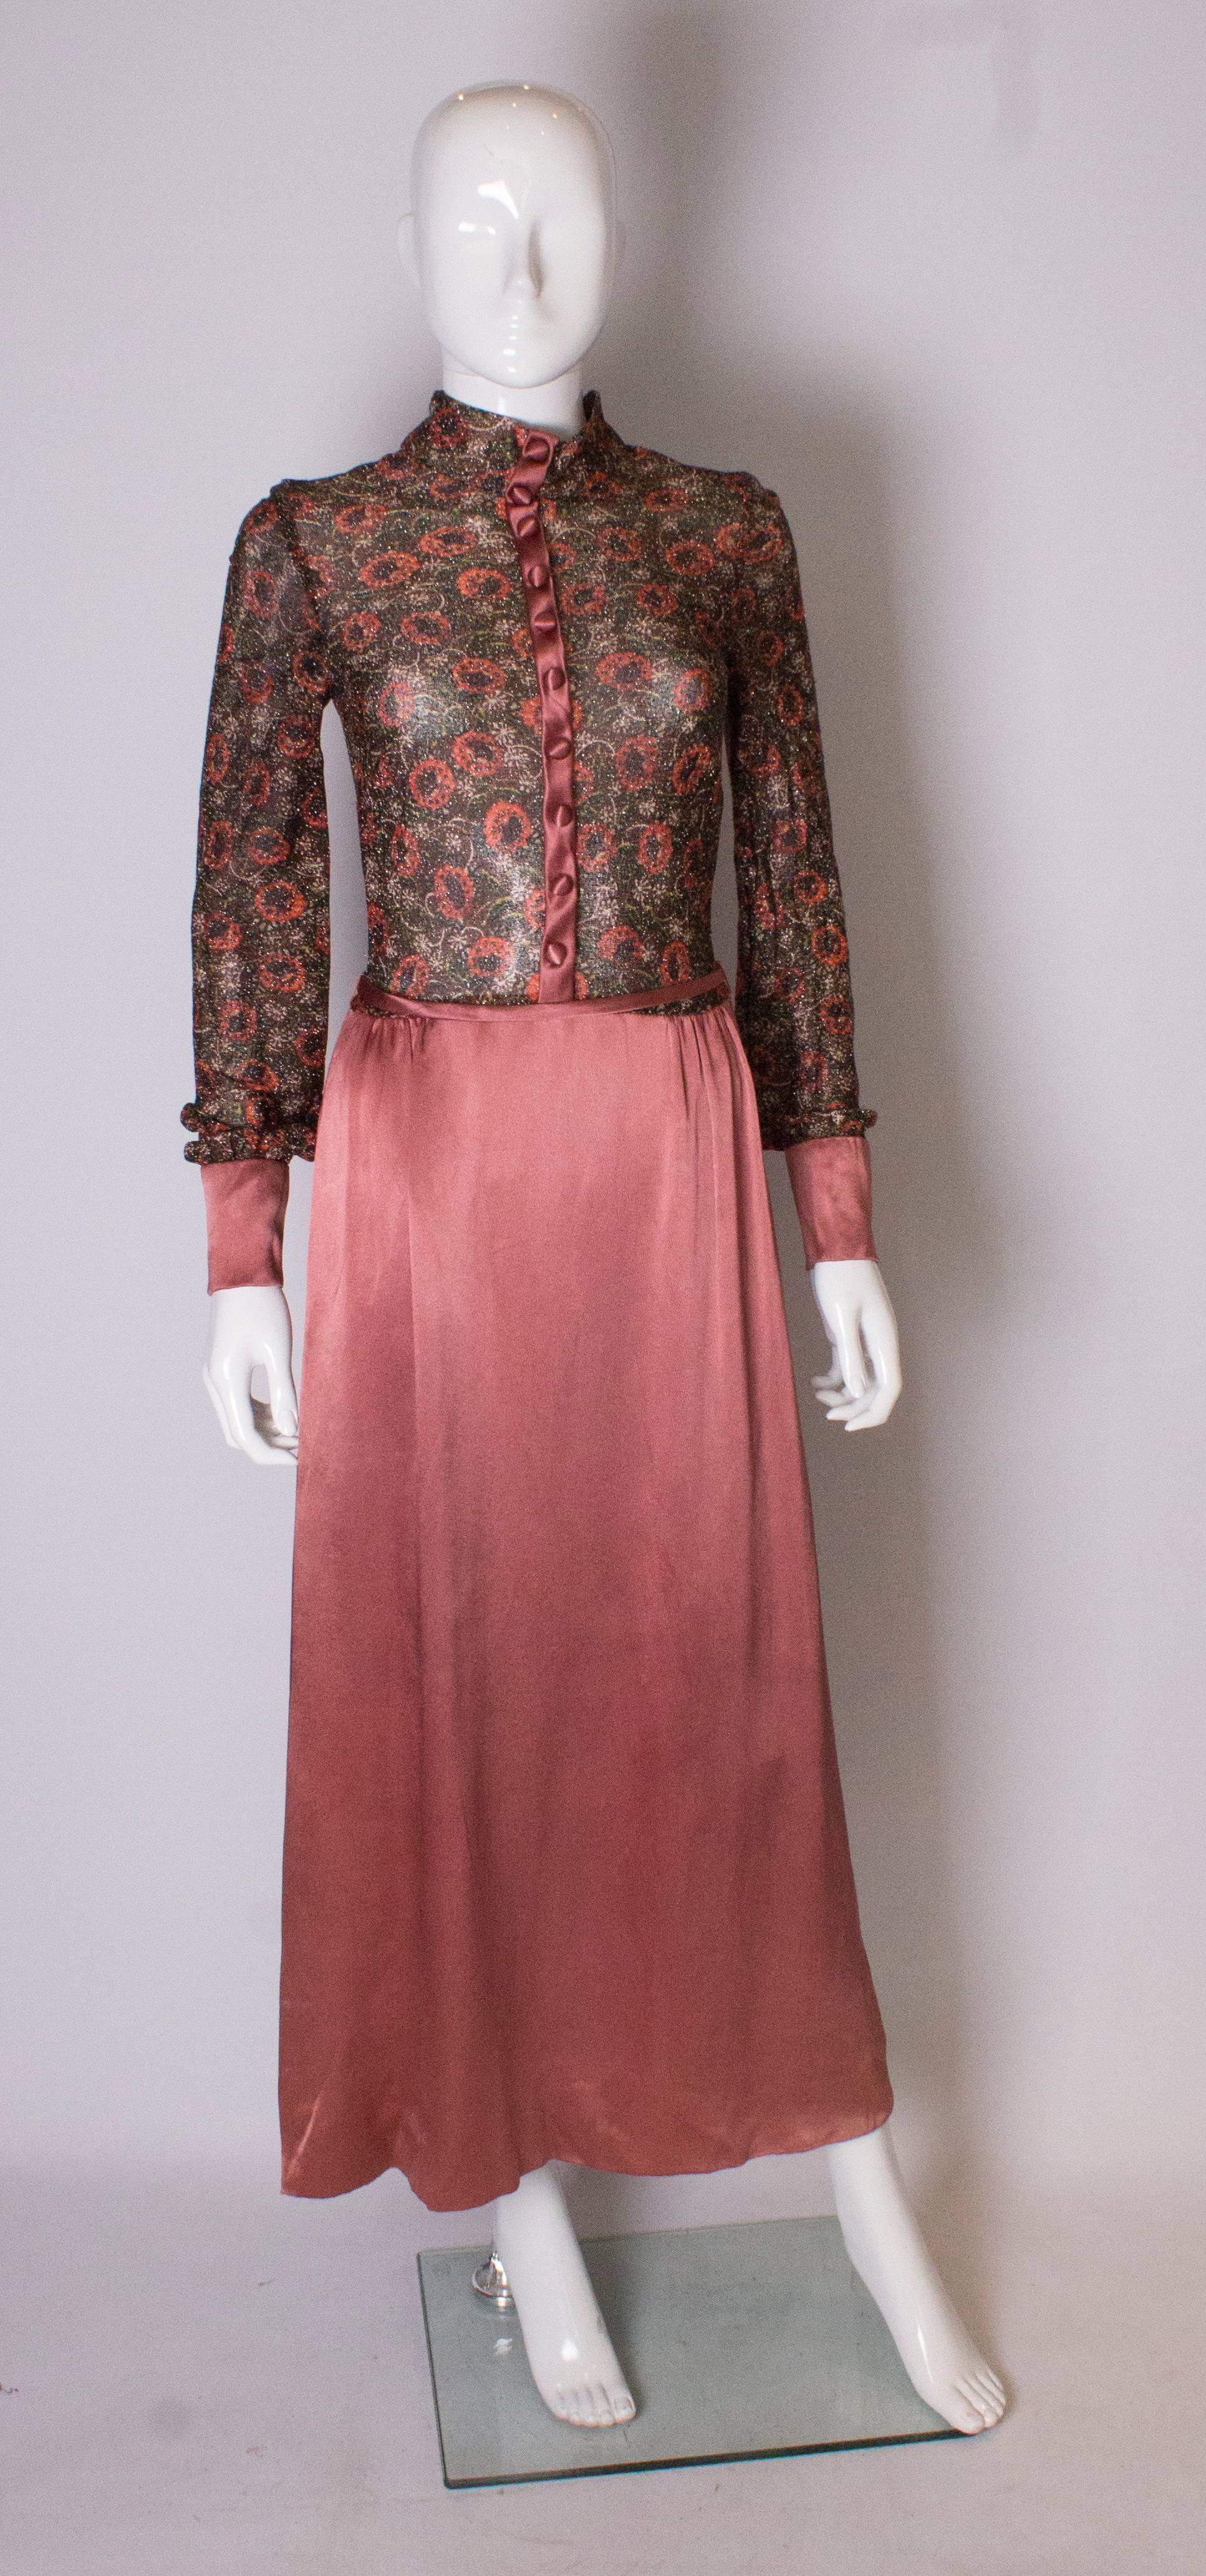 Ein atemberaubendes Kleid aus den 1970er Jahren von Jean Varon. Das Oberteil ist aus weichem, goldfarbenem Lurex mit einem Blumenmuster. Der untere Bereich des Rocks ist staubig rosa. Das Kleid hat breite Manschetten mit vier Knöpfen und auf der